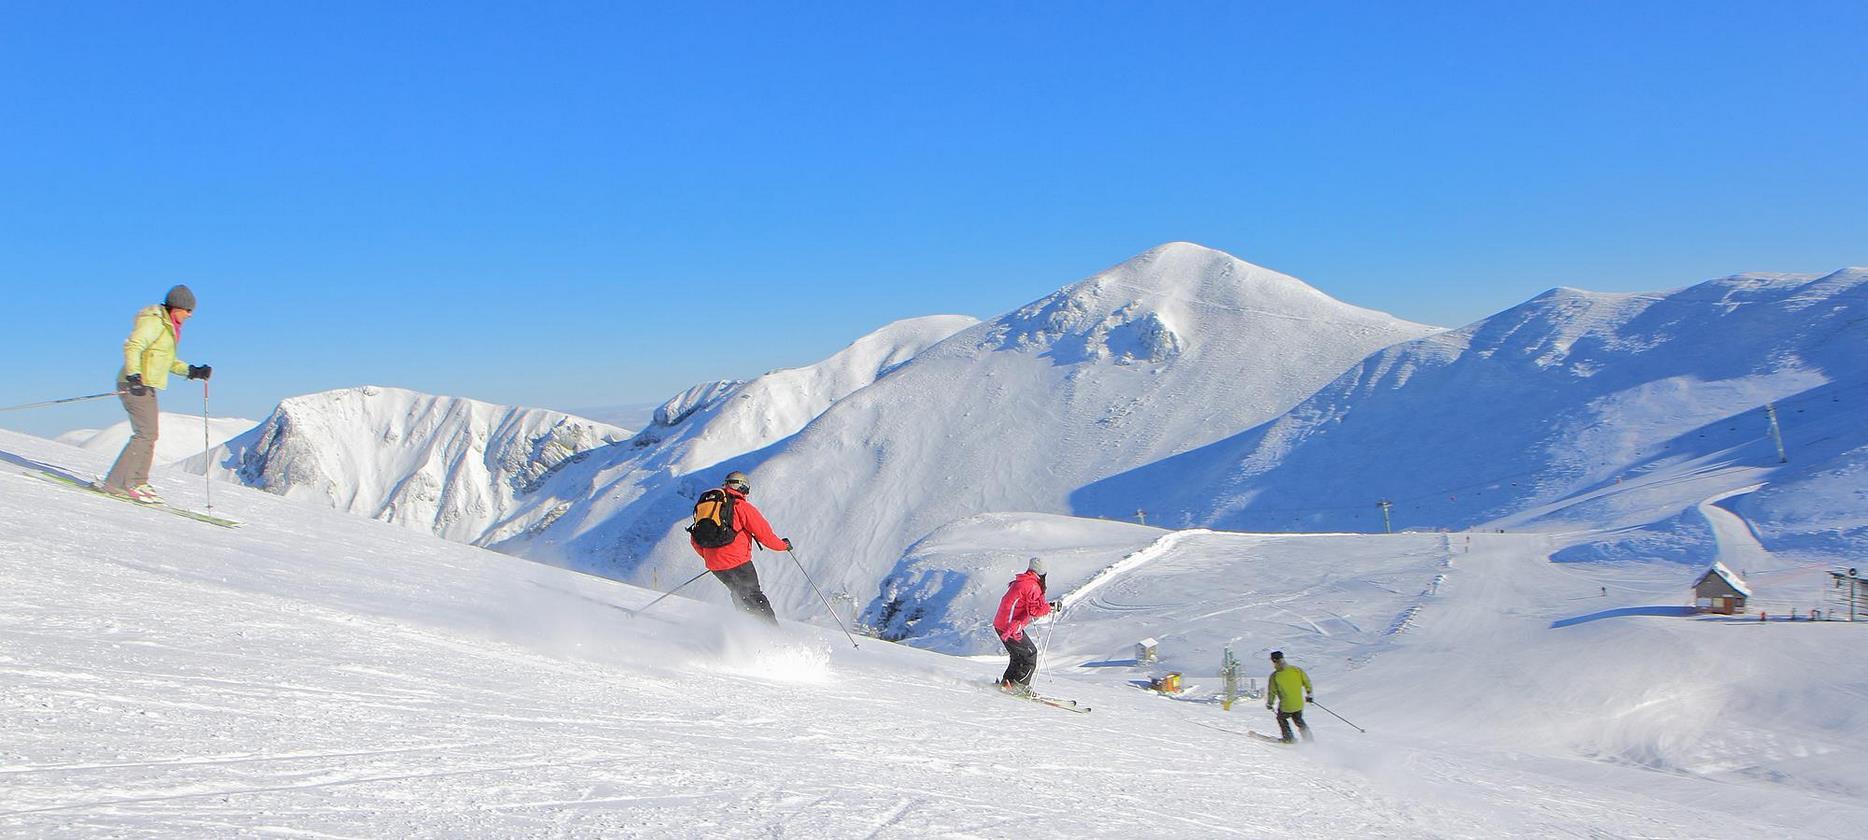 Super Besse - Descente a ski alpin vers le Mont Dore